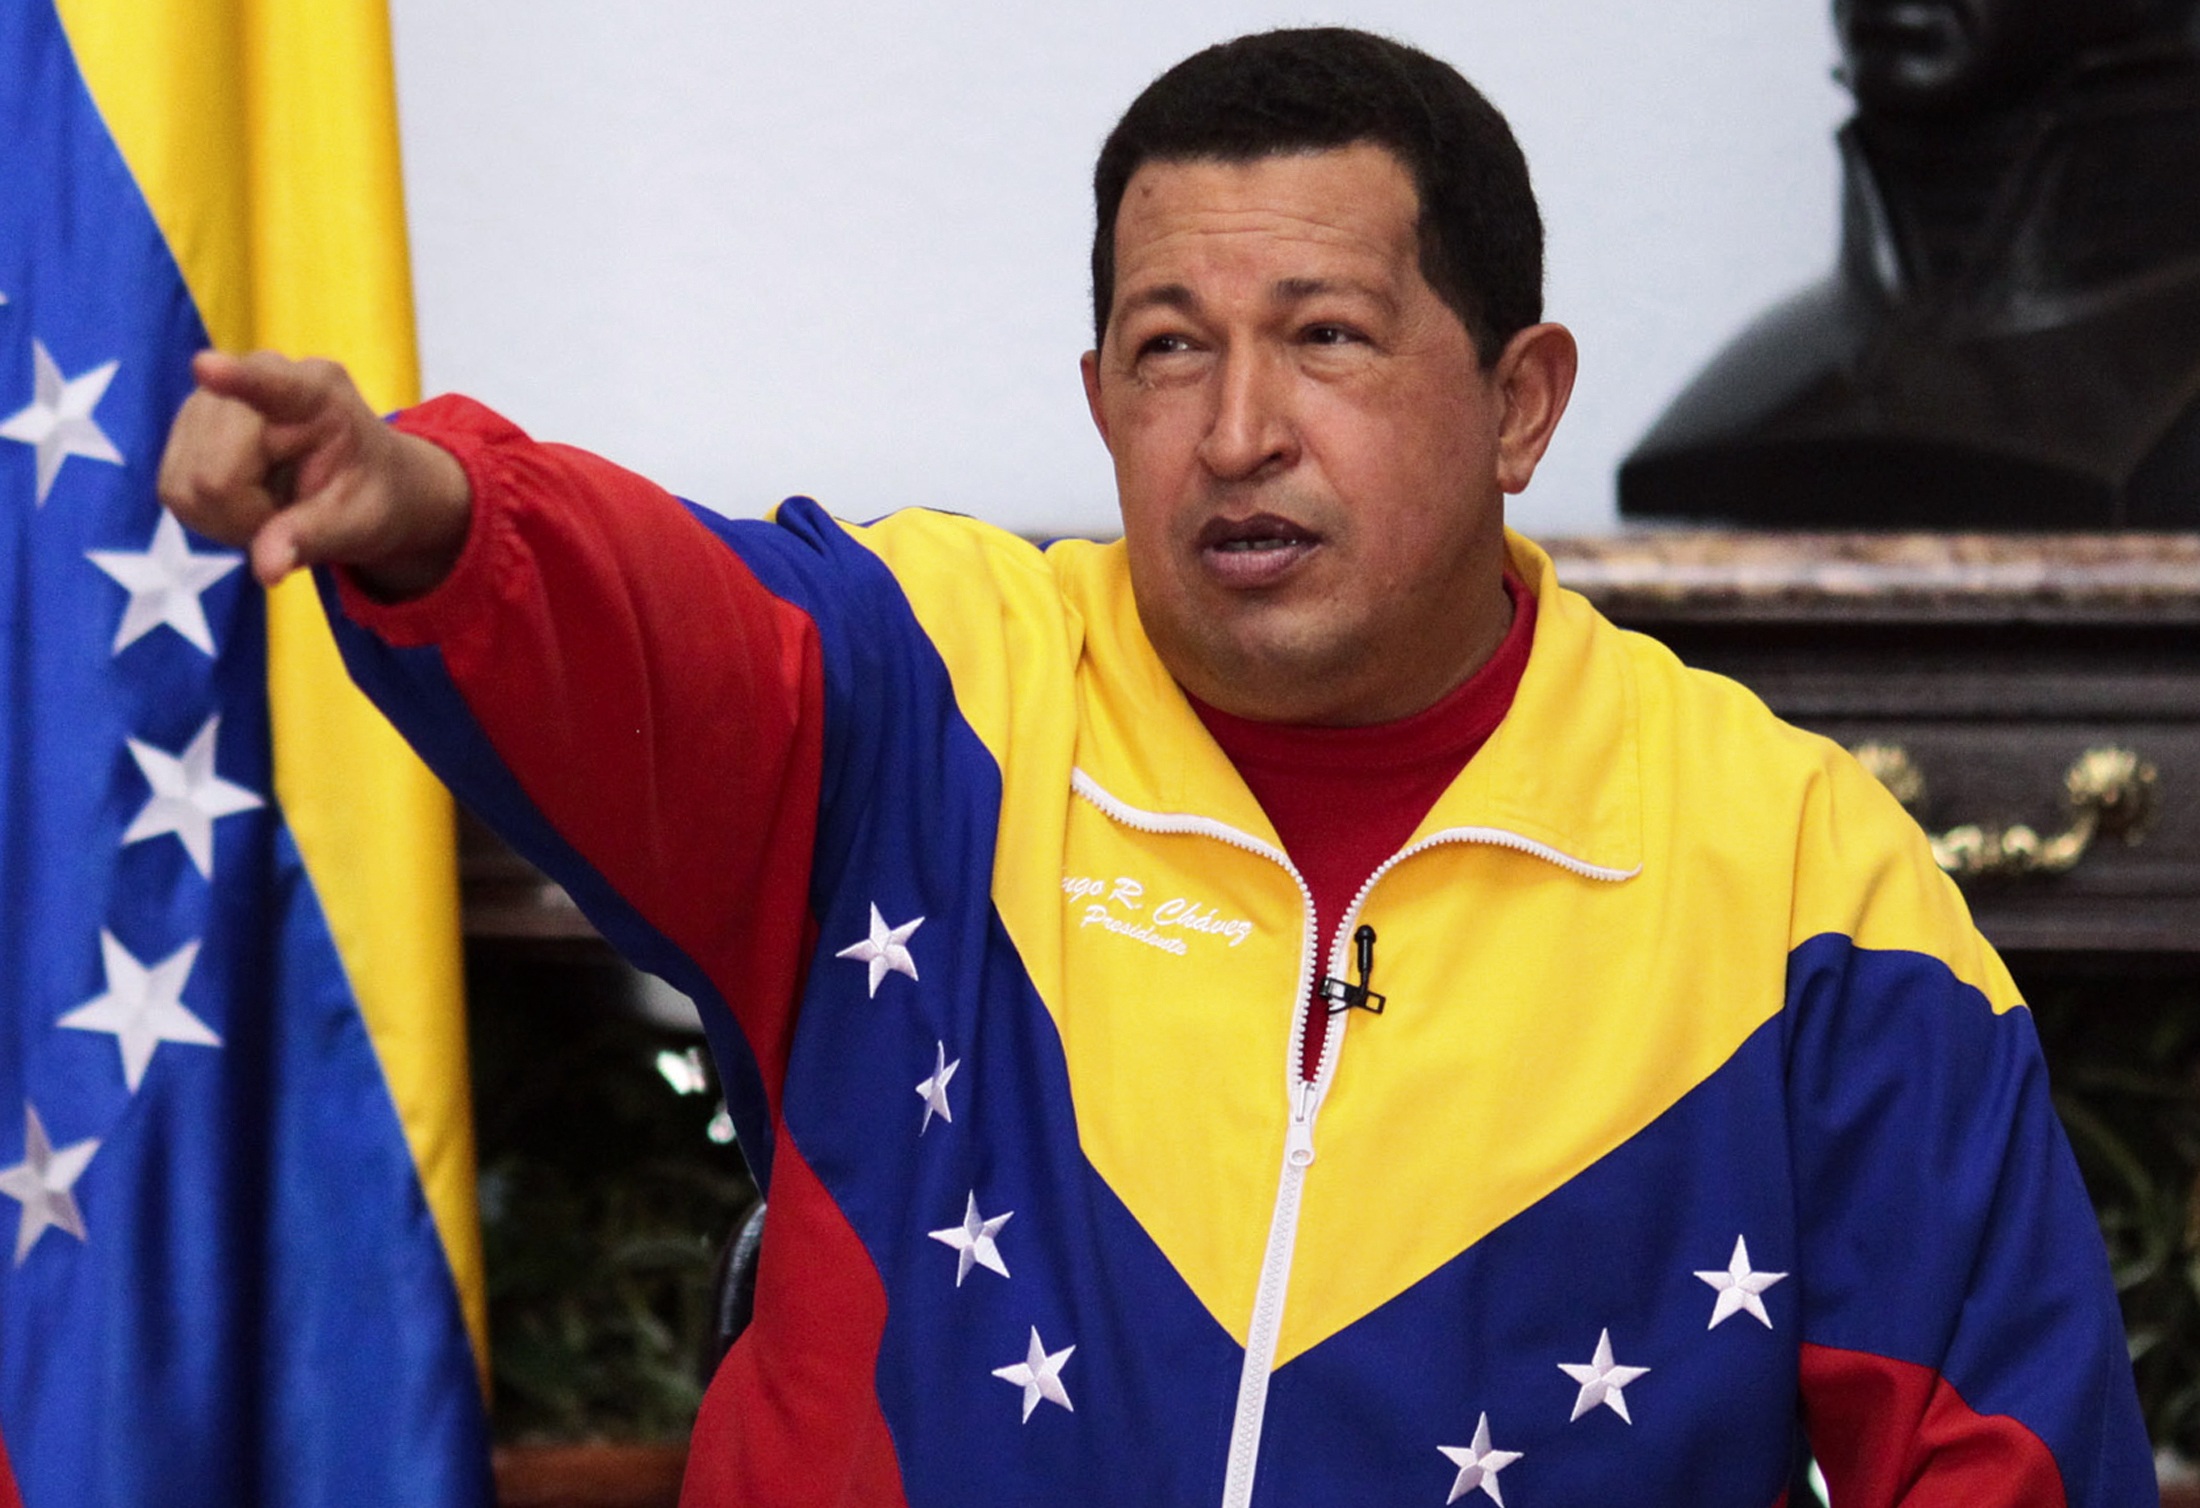 <b>Ούγκο Τσάβες </b>Κατέκρινε τις δηλώσεις Ομπάμα αναφορικά με την κατασκευή πυρηνικού σταθμού στη Βενεζουέλα